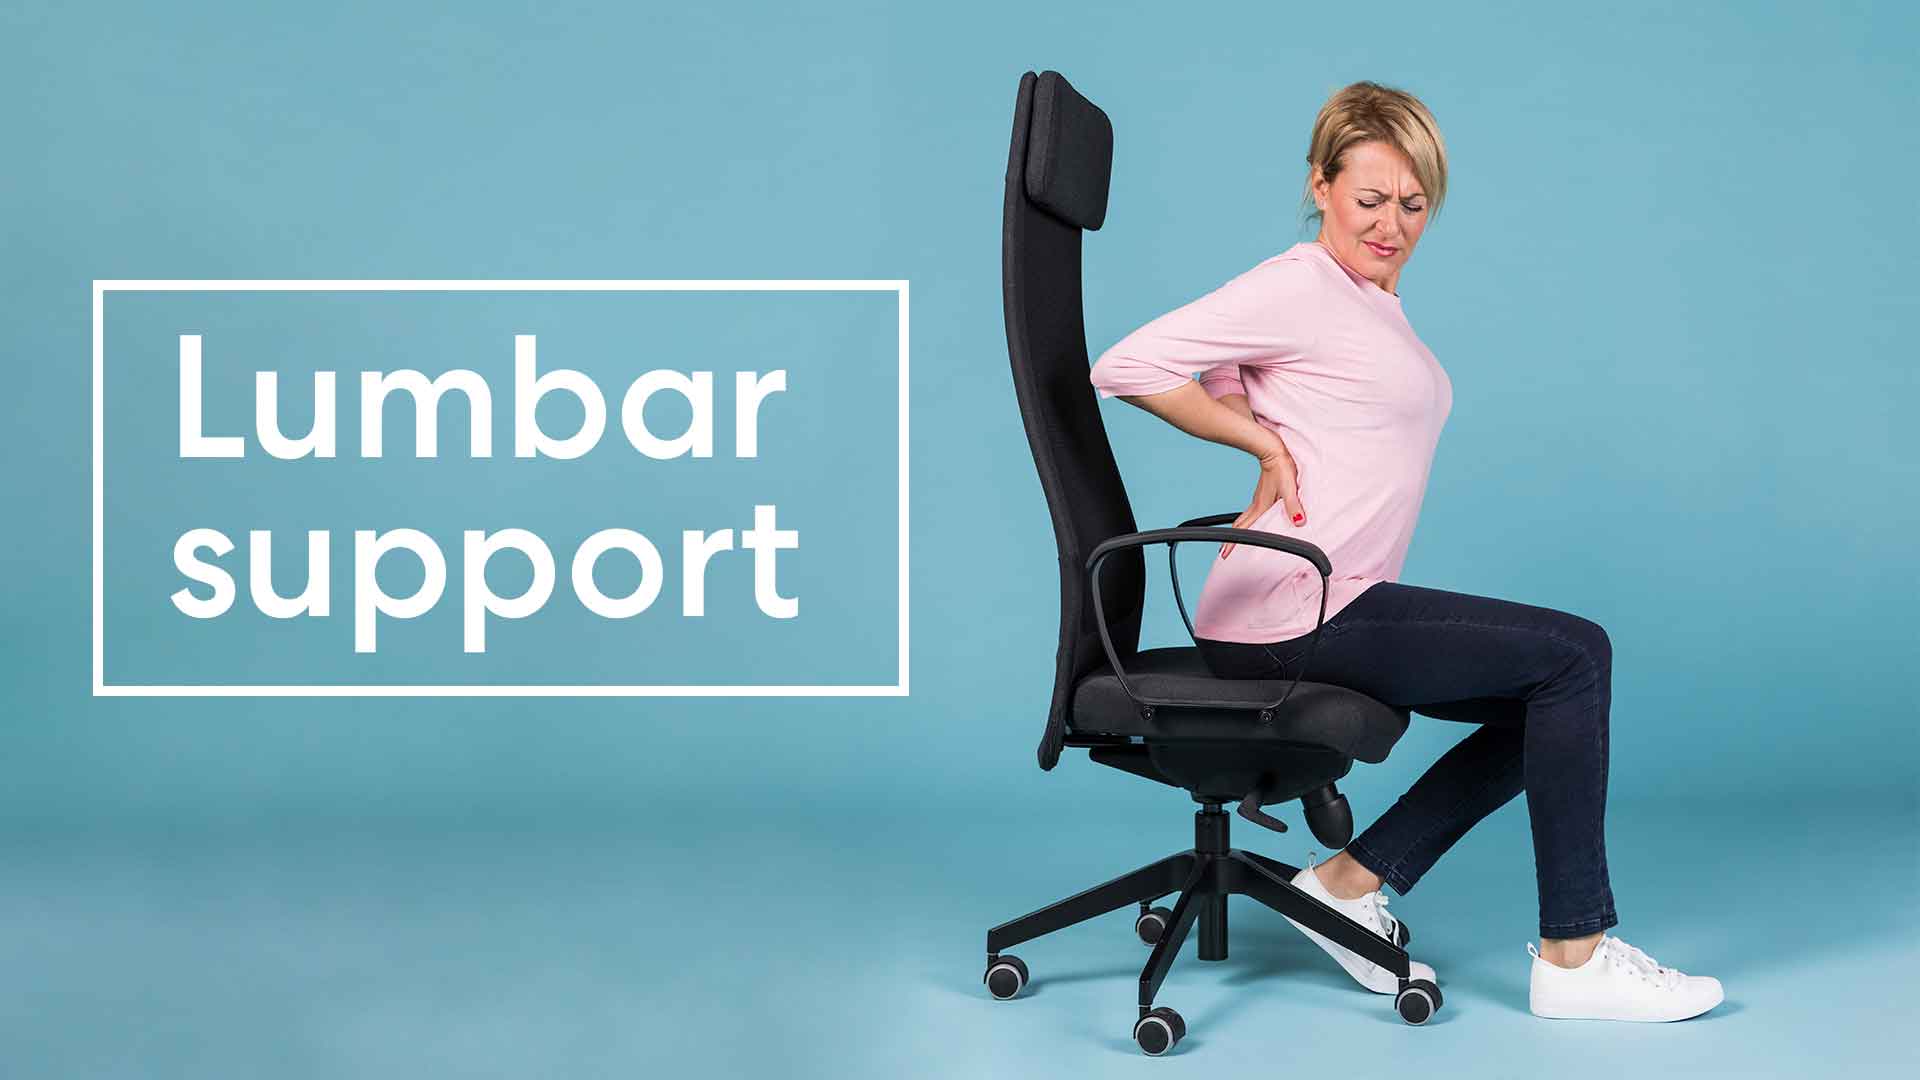 Lumbar support office chair